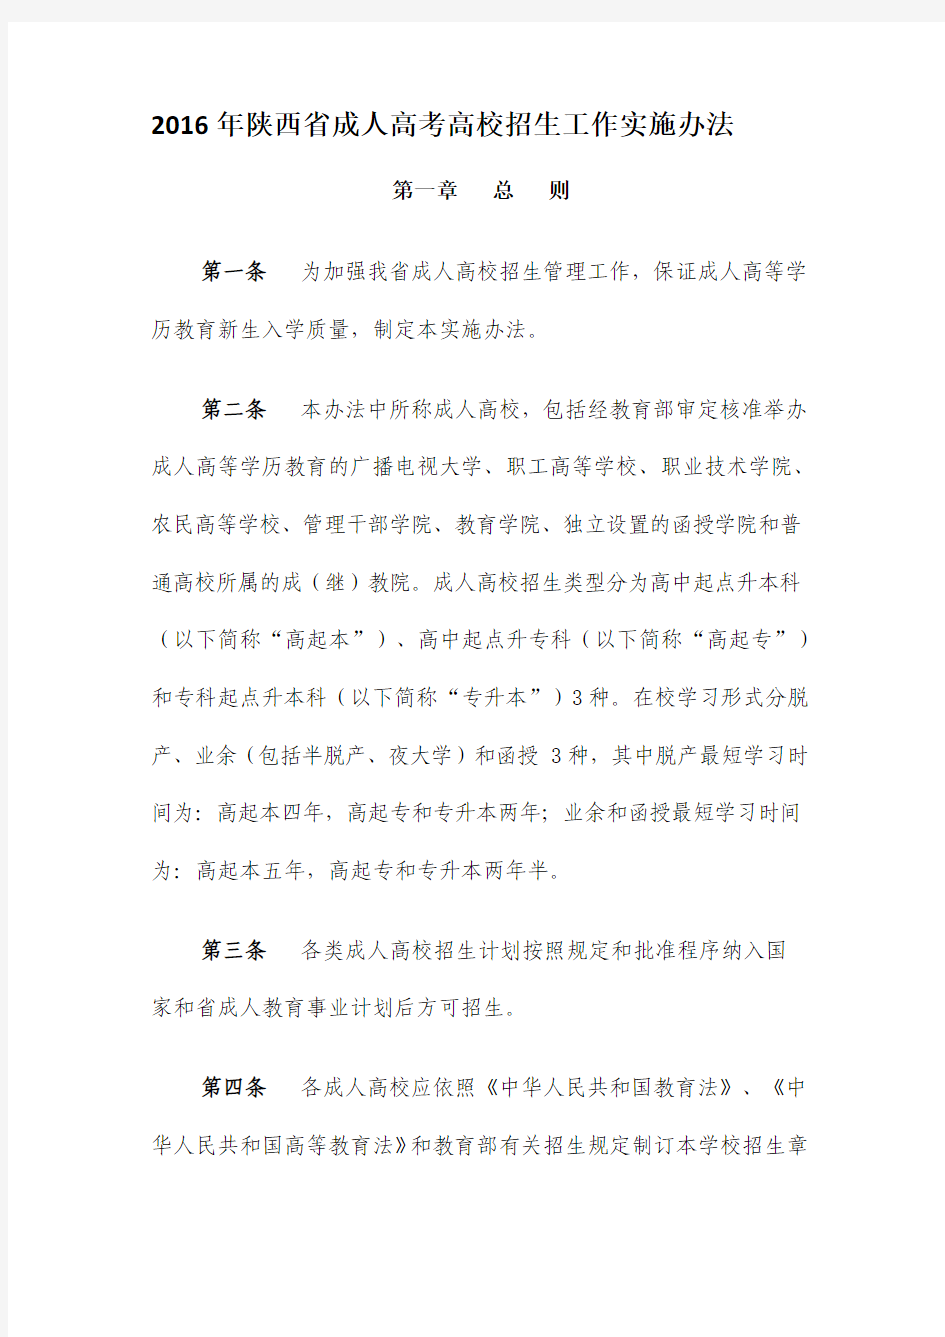 2016年陕西省成人高考高校招生工作实施办法